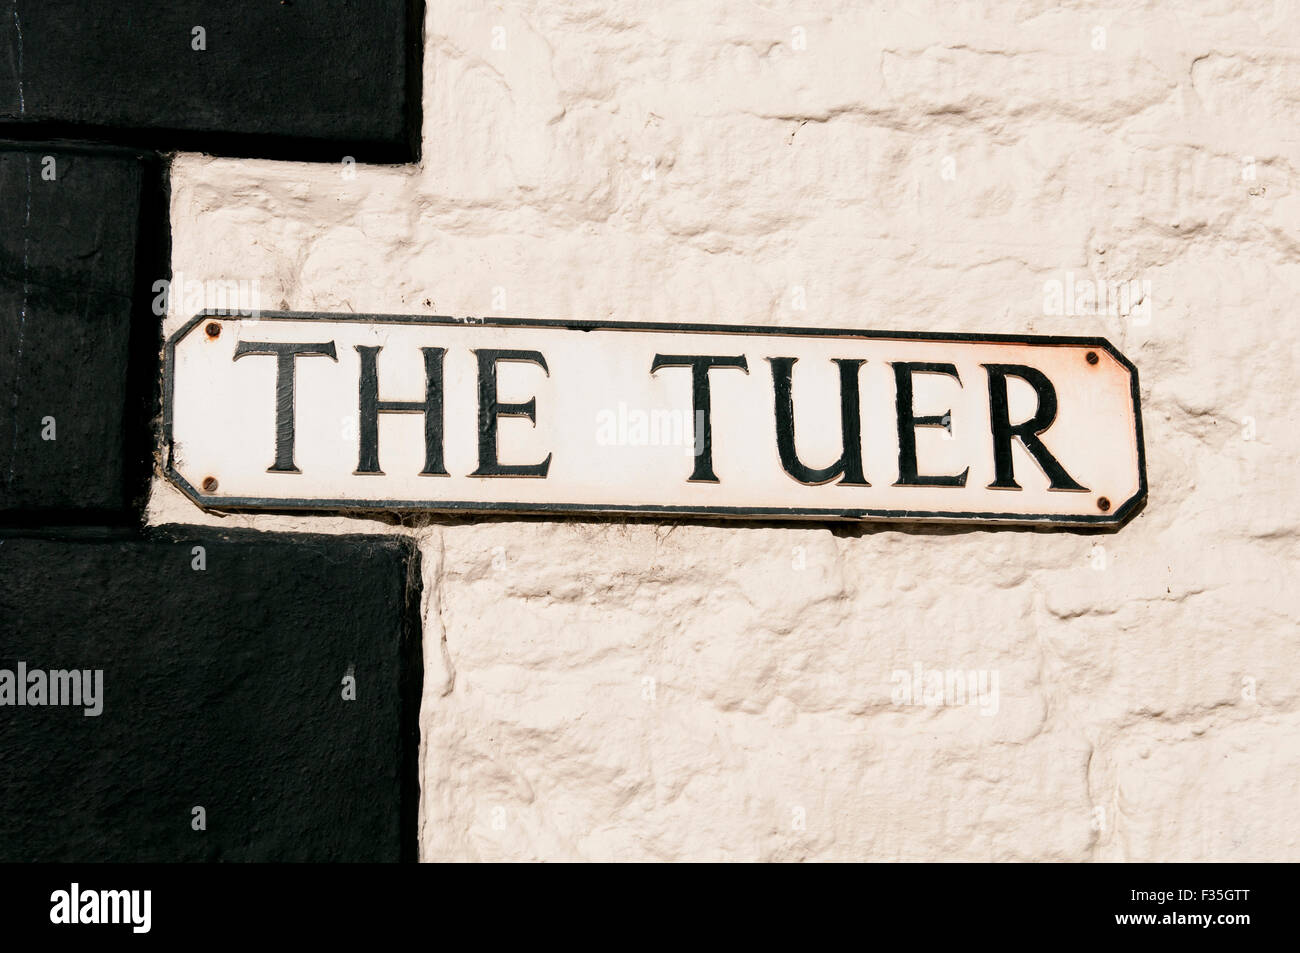 The Tuer street sign, Eynsham, Oxfordshire, England, UK Stock Photo